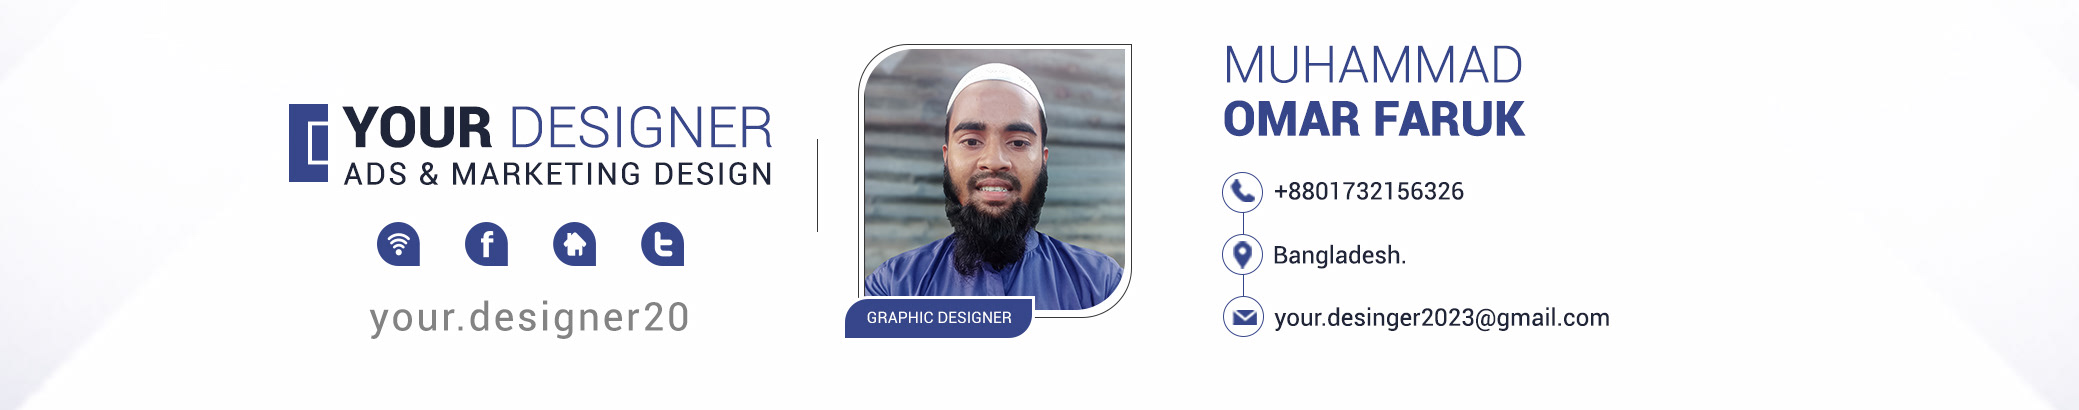 Muhammd Omar Faruk's profile banner